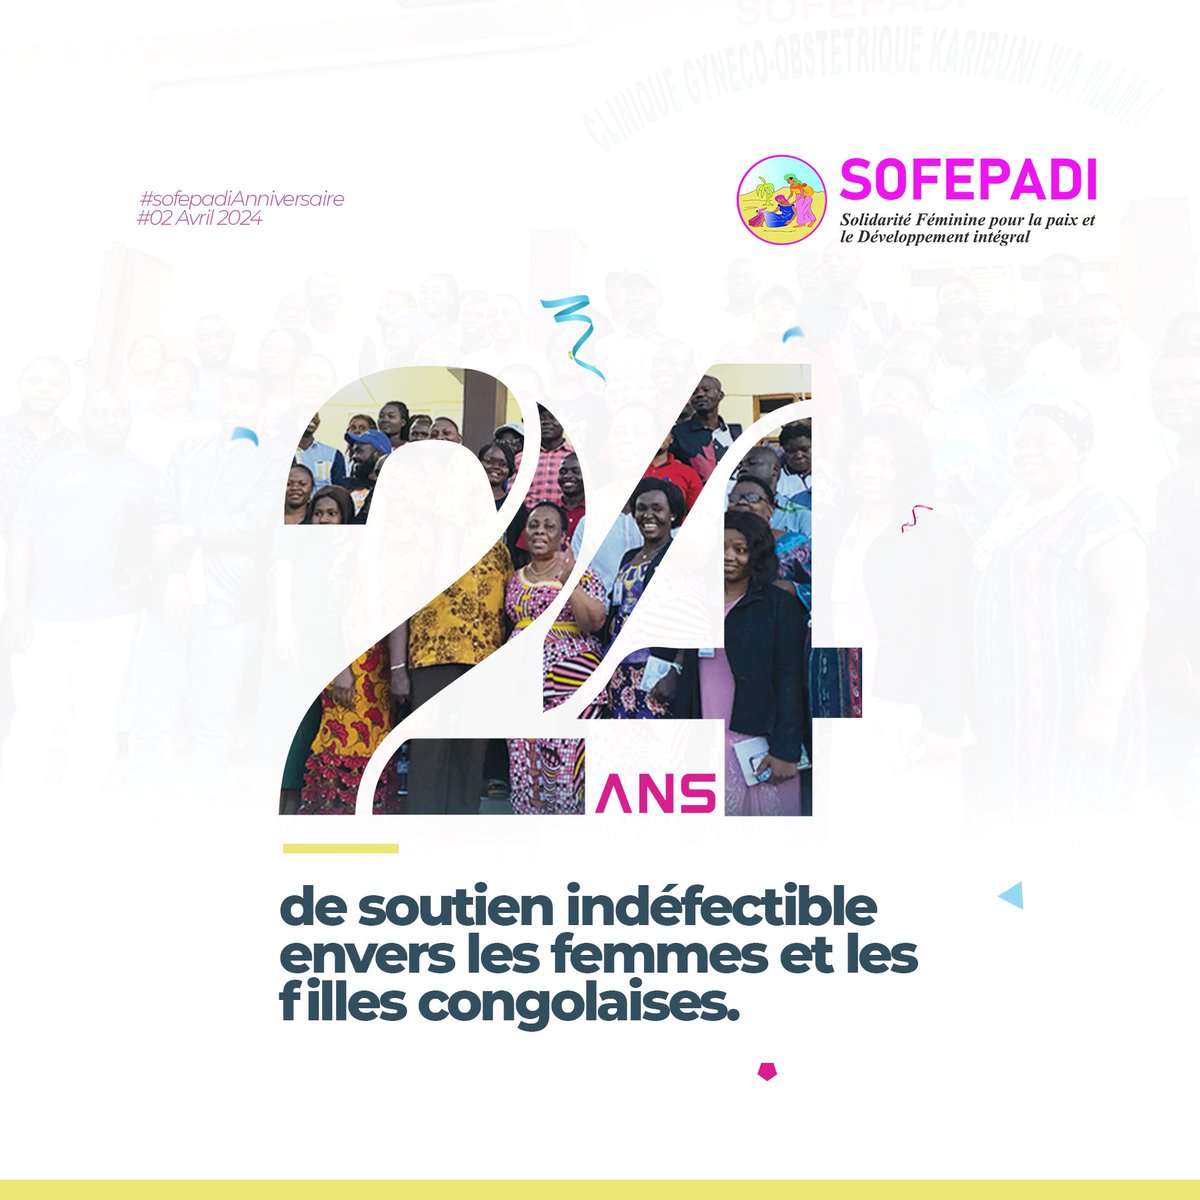 🎉 Joyeux 24e anniversaire à la SOFEPADI ! 🎉 24 ans de dévouement, de lutte contre les violences basées sur le genre, de défense des droits des femmes en RDC. Merci à tous ceux qui nous ont soutenus dans cette mission essentielle⤵️ instagram.com/reel/C5RA0R9IS…